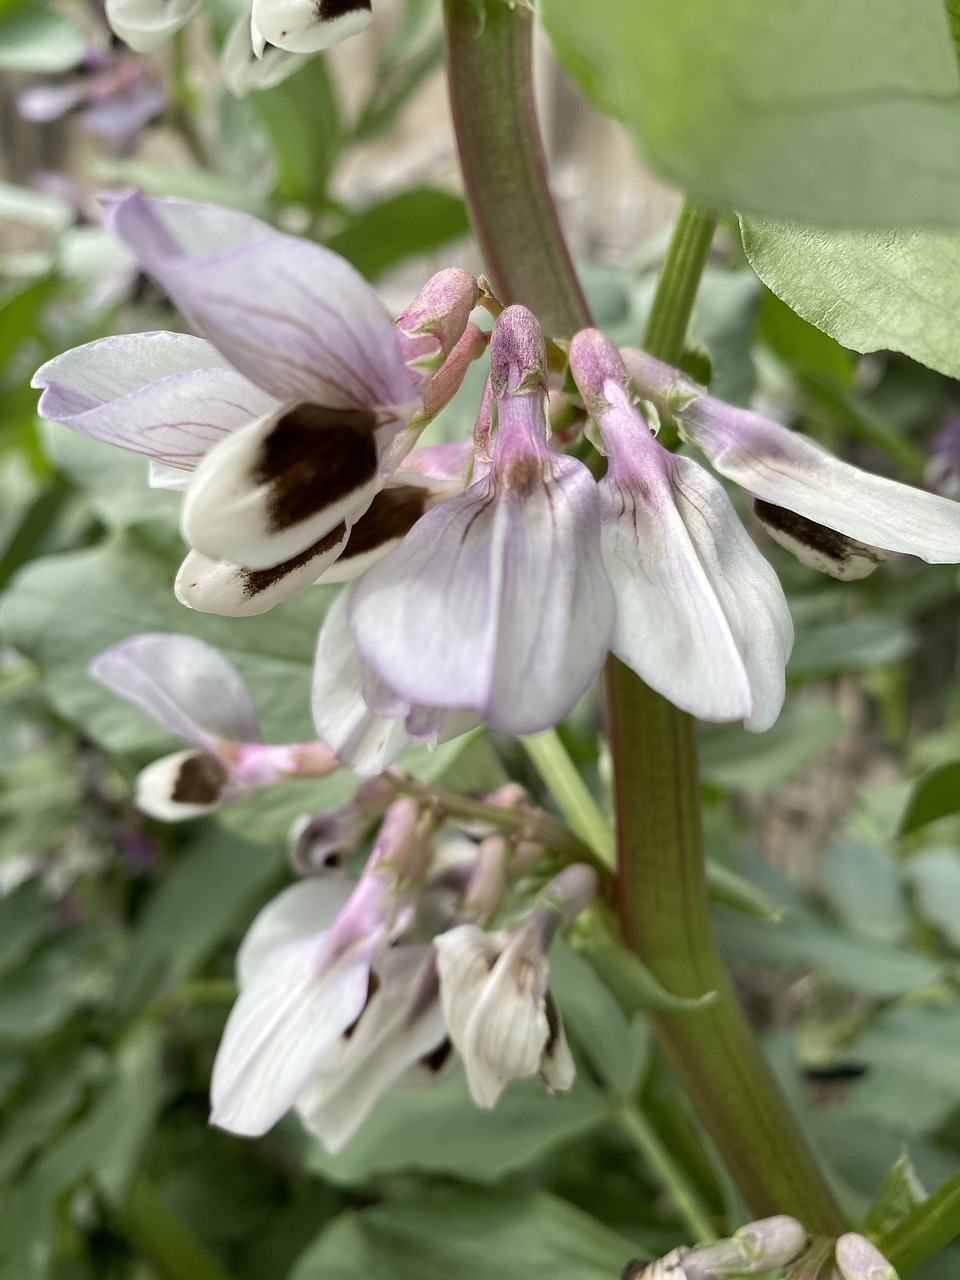 Broad bean flower in bloom.